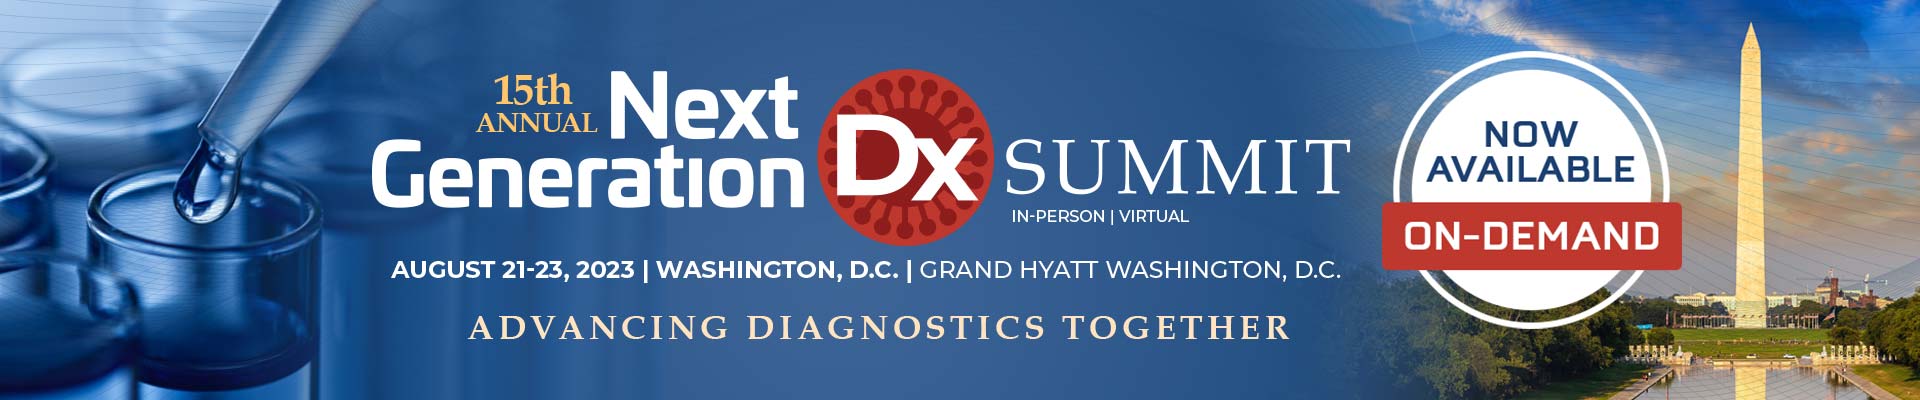 Next Generation DX Summit